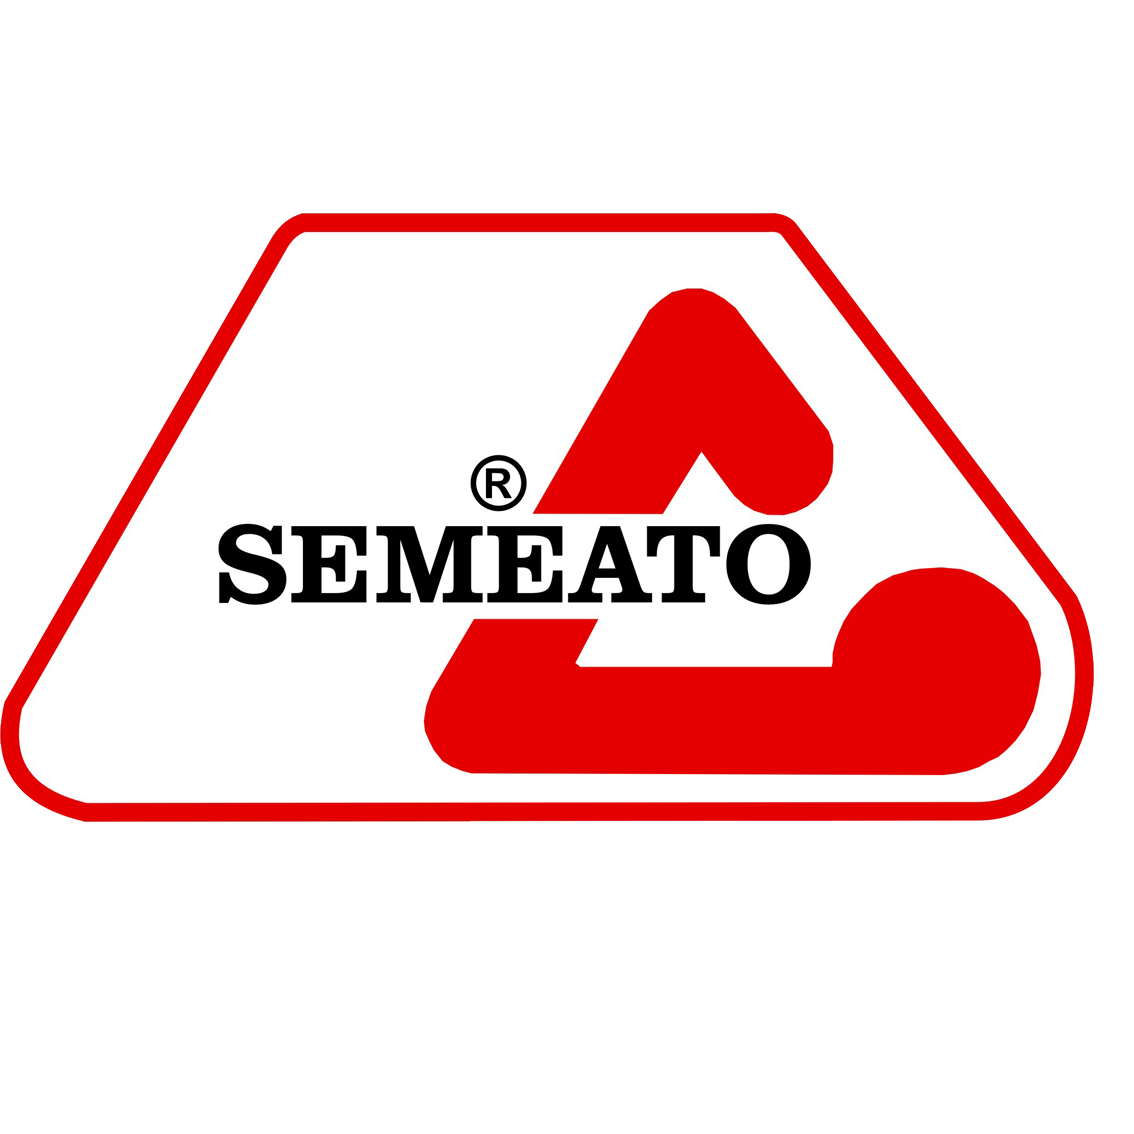 Semeato logo